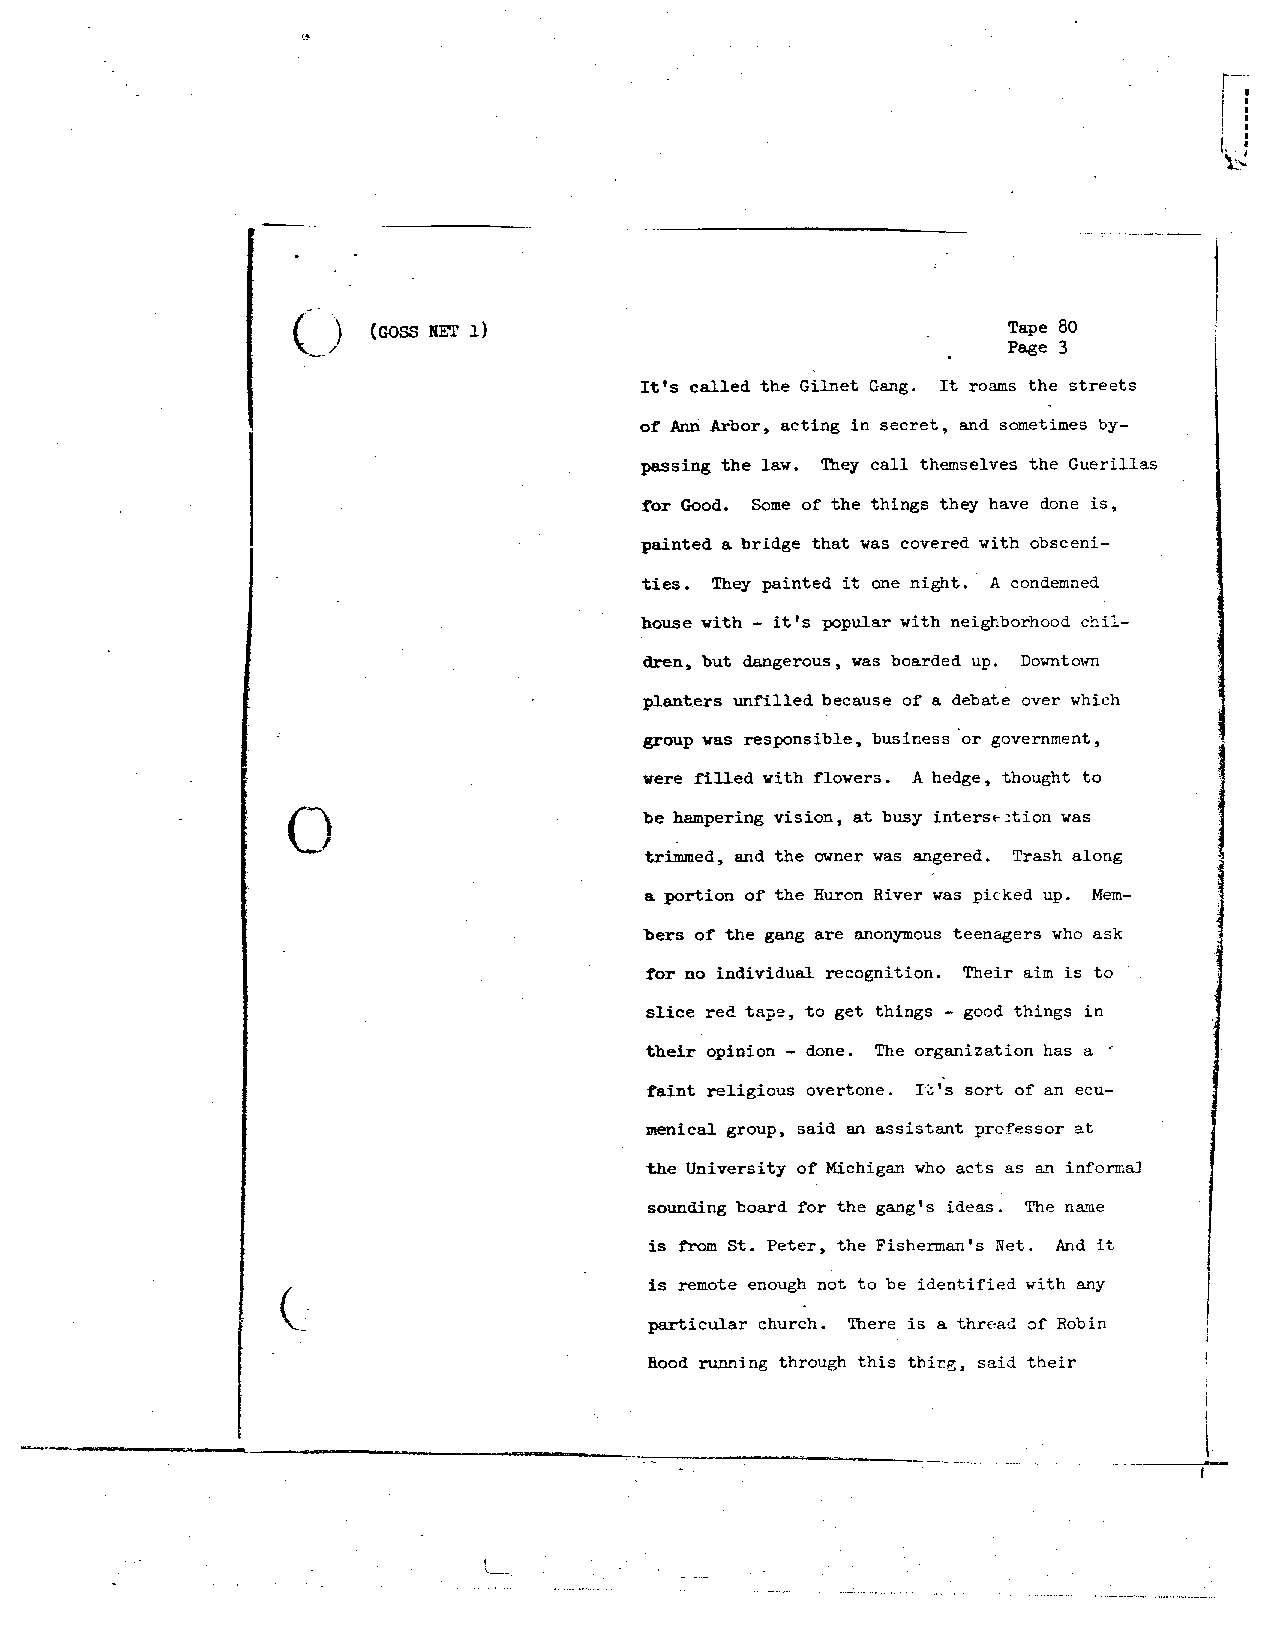 Page 660 of Apollo 8’s original transcript